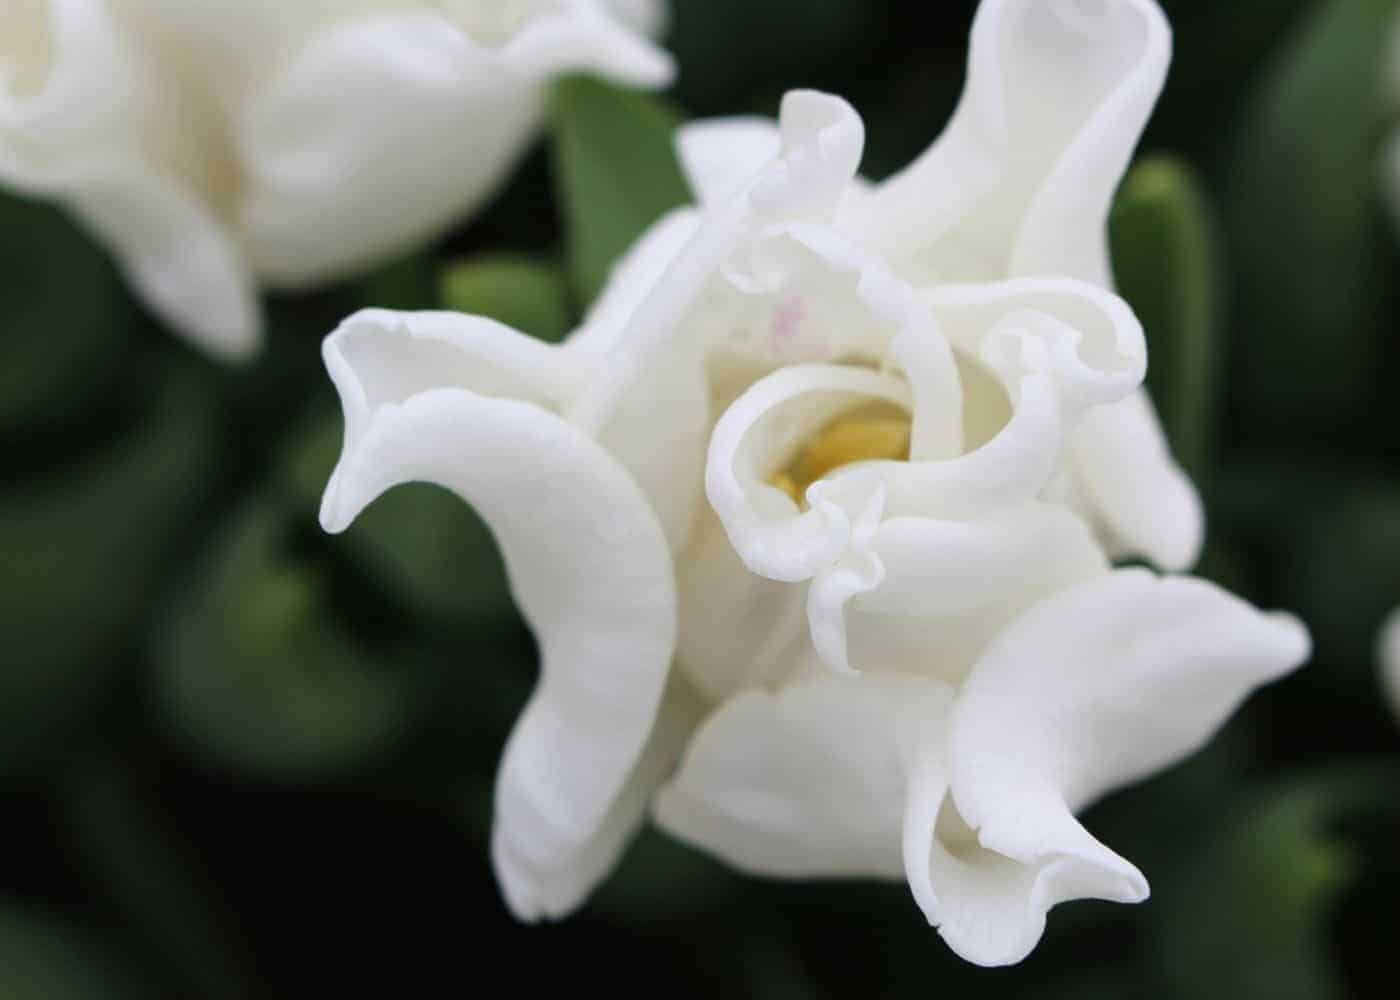 Types of tulips - coronet - white liberstar